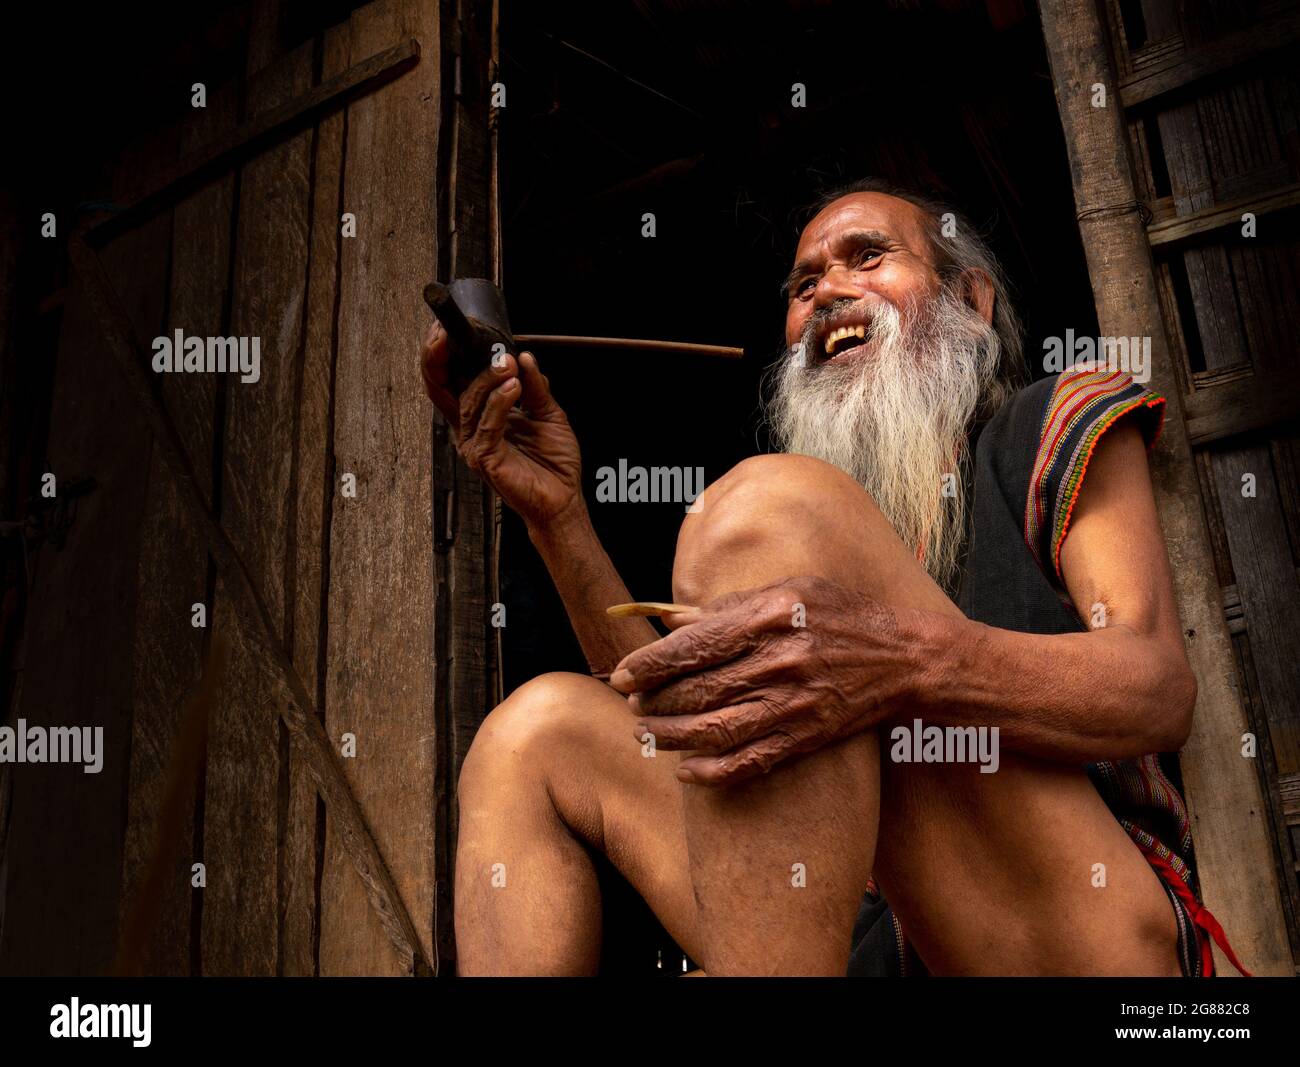 Porträt eines alten Sedang-Mannes (ethnische Minderheit in Kontum, Zentralvietnam). Mit einem fröhlichen Lächeln und sorglos machte er einen guten Eindruck auf mich über die Stockfoto